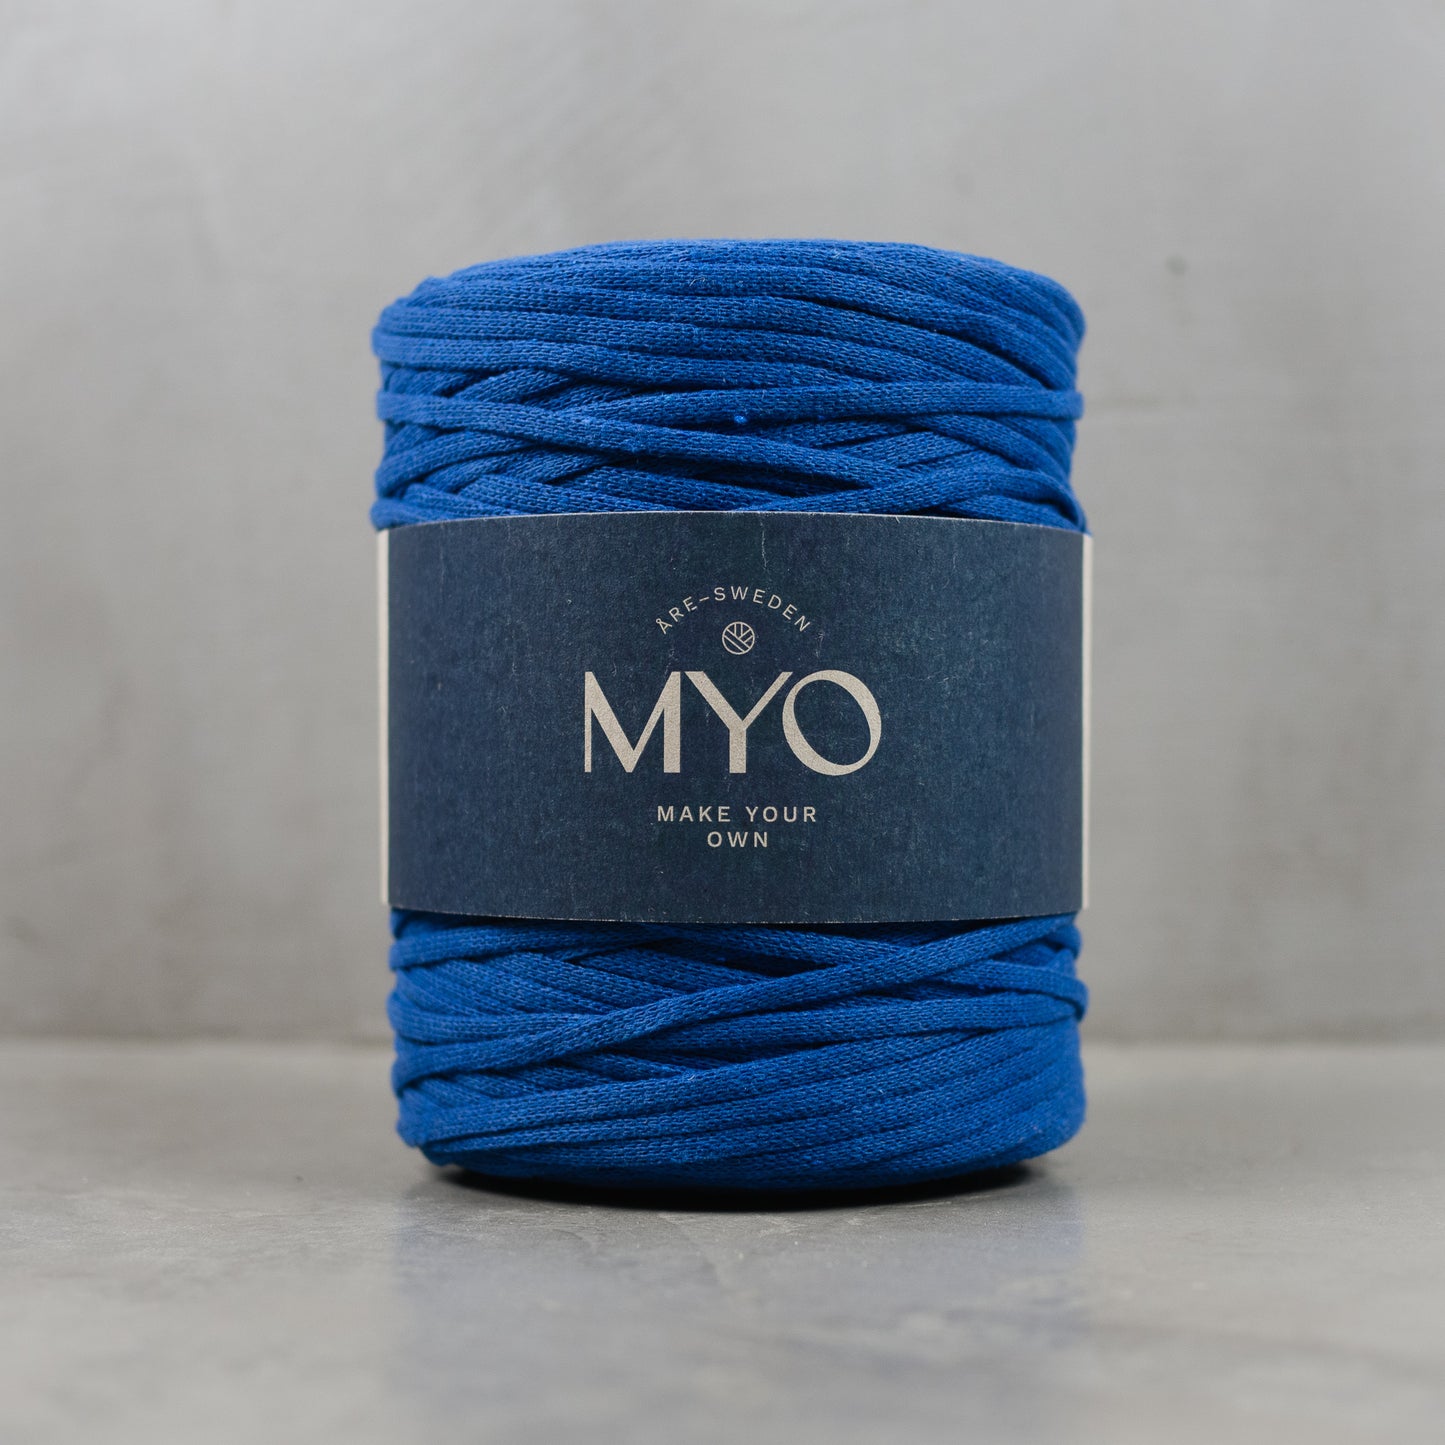 EKO Medium "Tube yarn" 1000g 